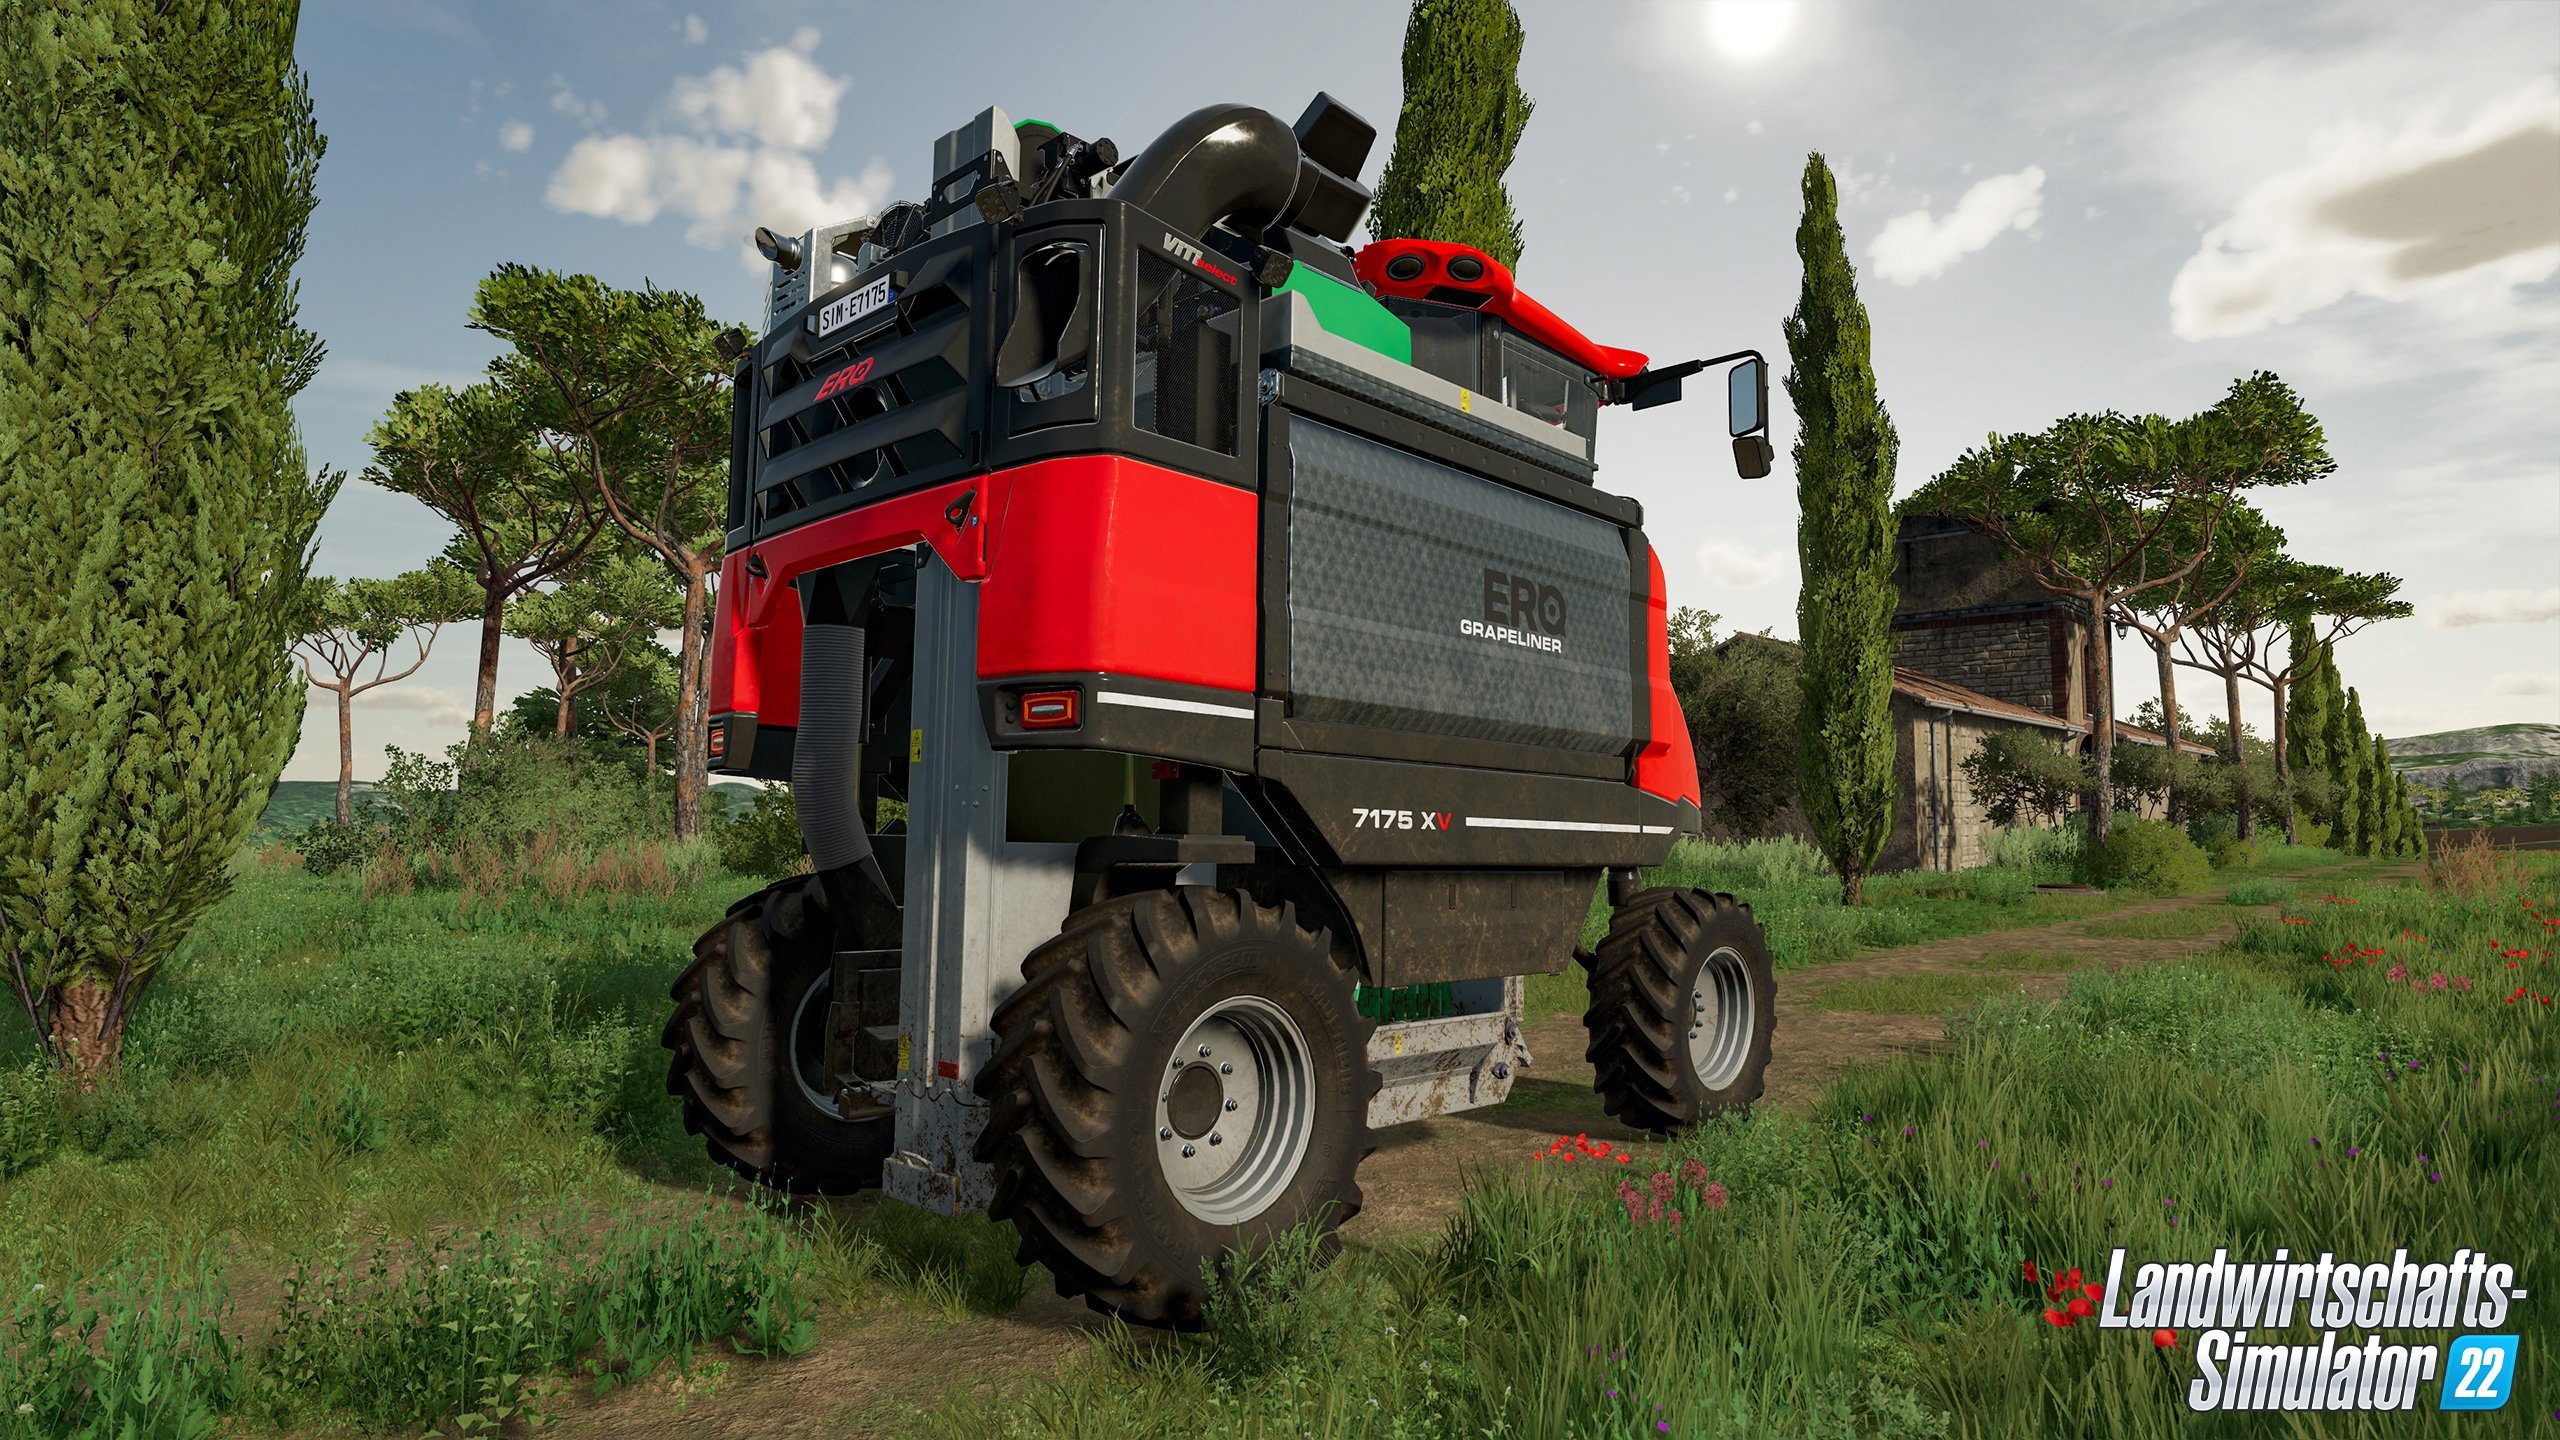 PC 22 Landwirtschafts-Simulator Rundumleuchte